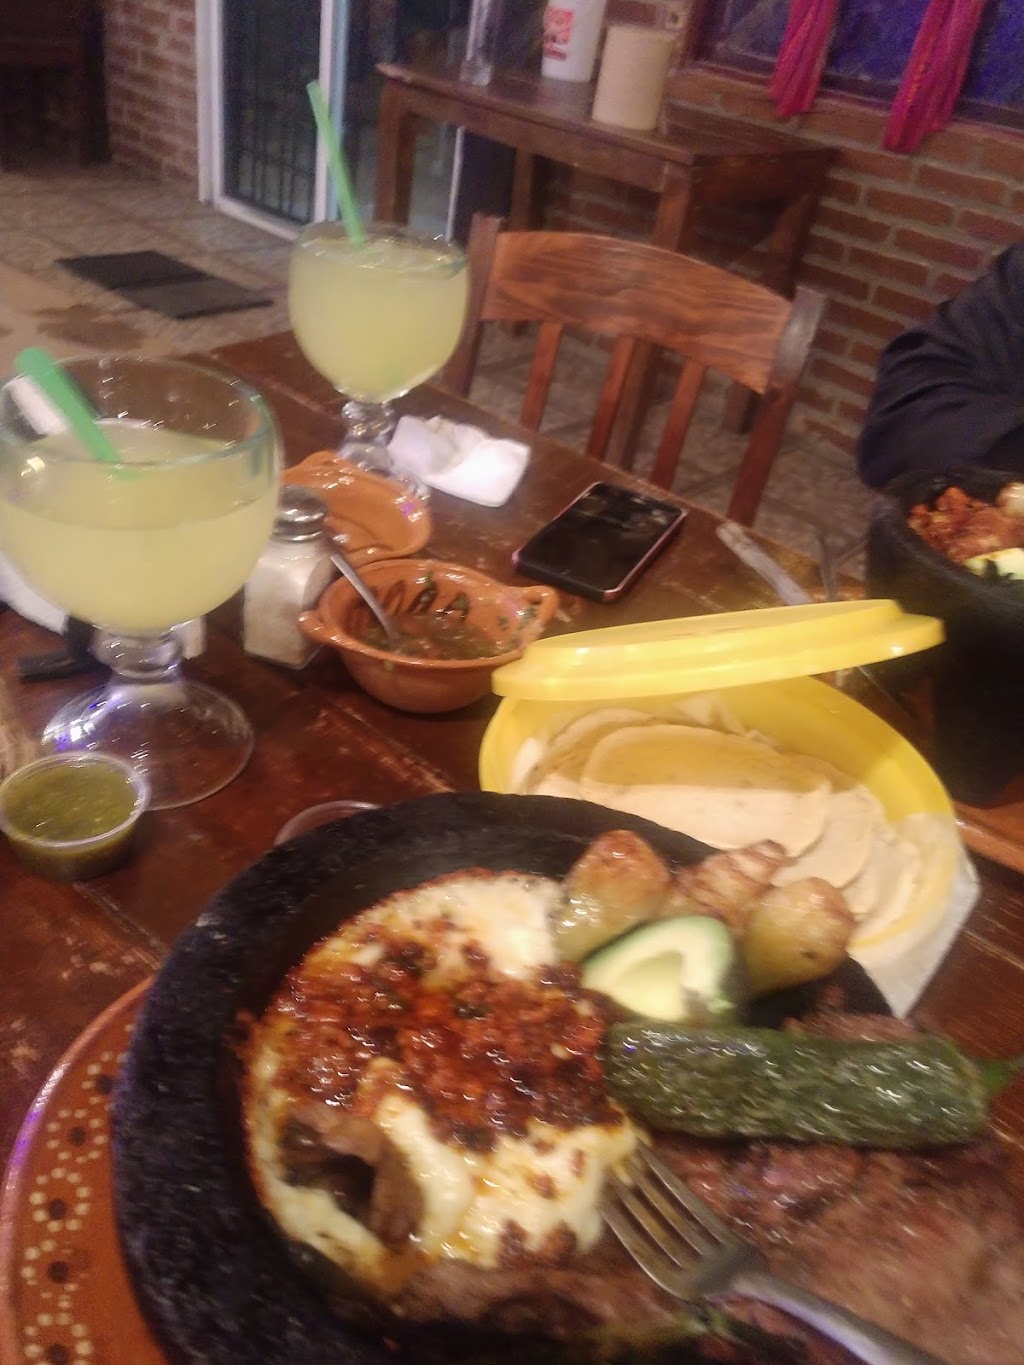 Restaurante El Rancho | México 2, Parcelas Ejido Zaragoza, 32599 Juárez, Chih., Mexico | Phone: 656 391 9090